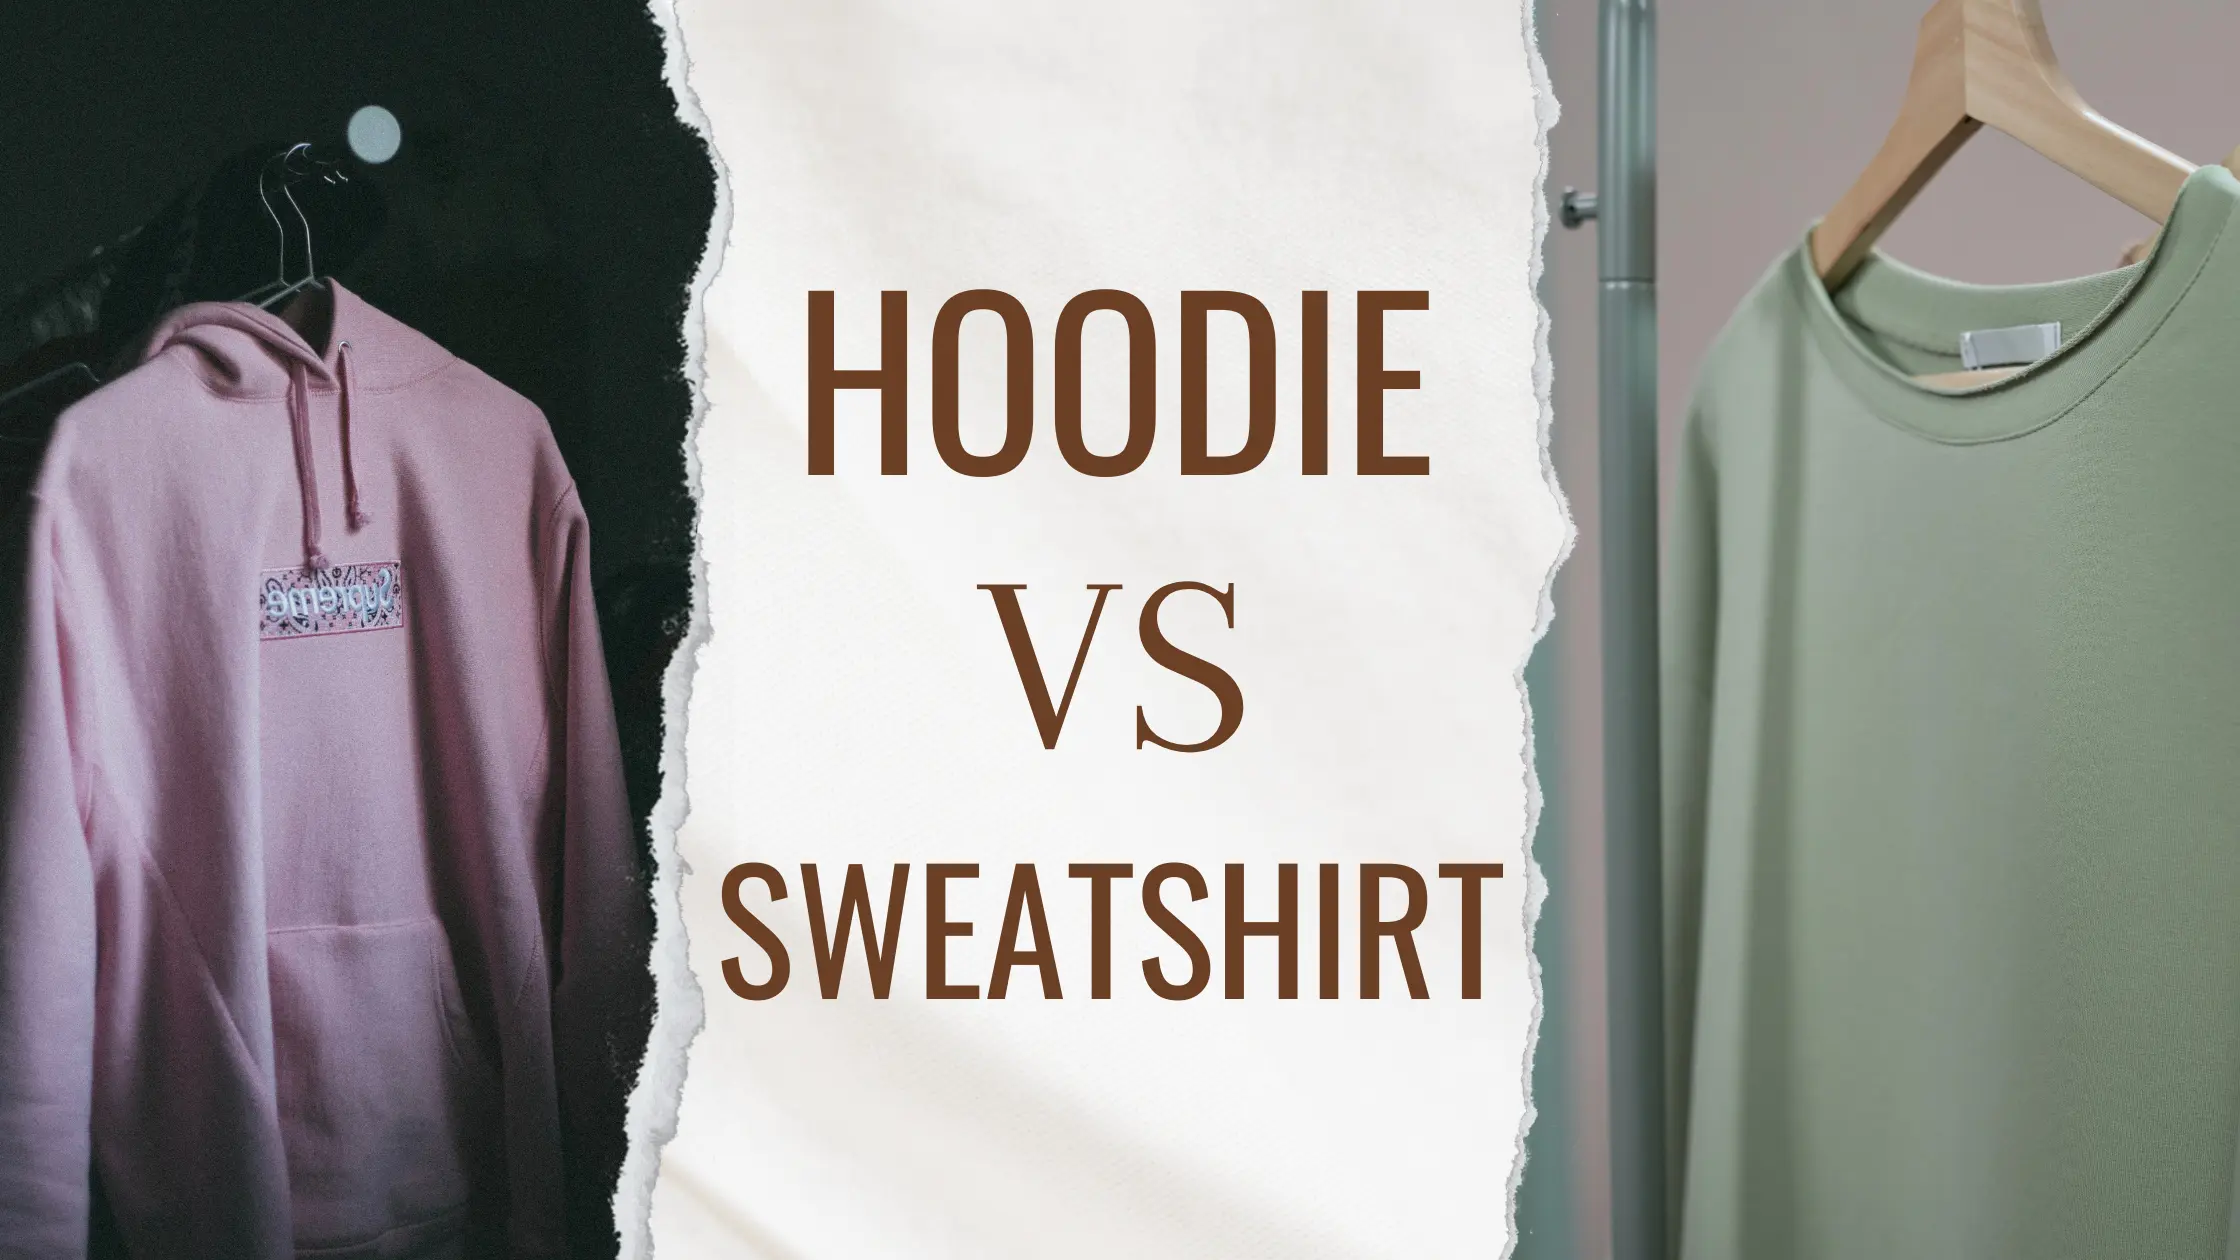 Hoodie vs Sweatshirt